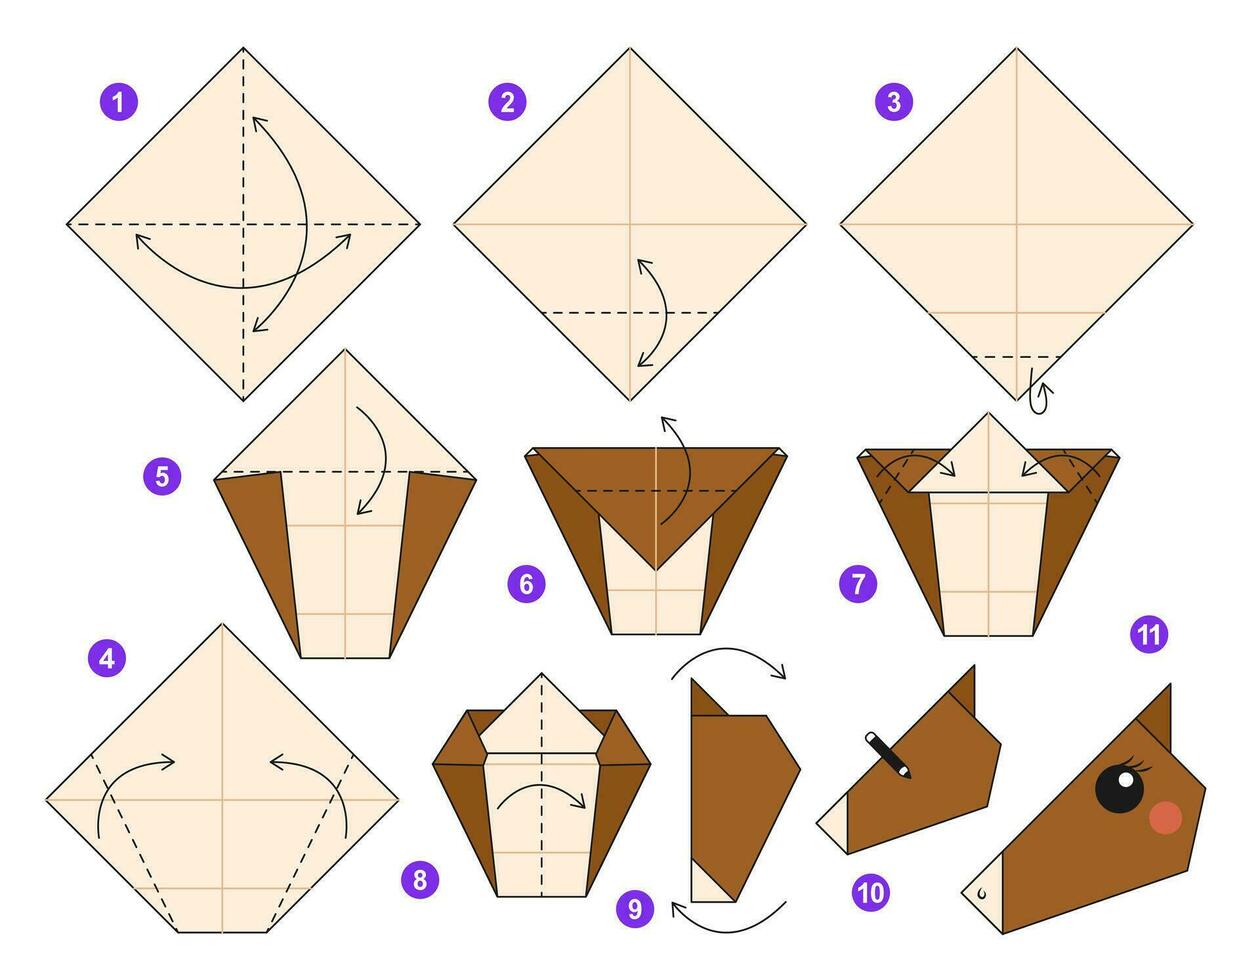 häst origami schema handledning rör på sig modell. origami för ungar. steg förbi steg på vilket sätt till göra en söt origami djur. vektor illustration.